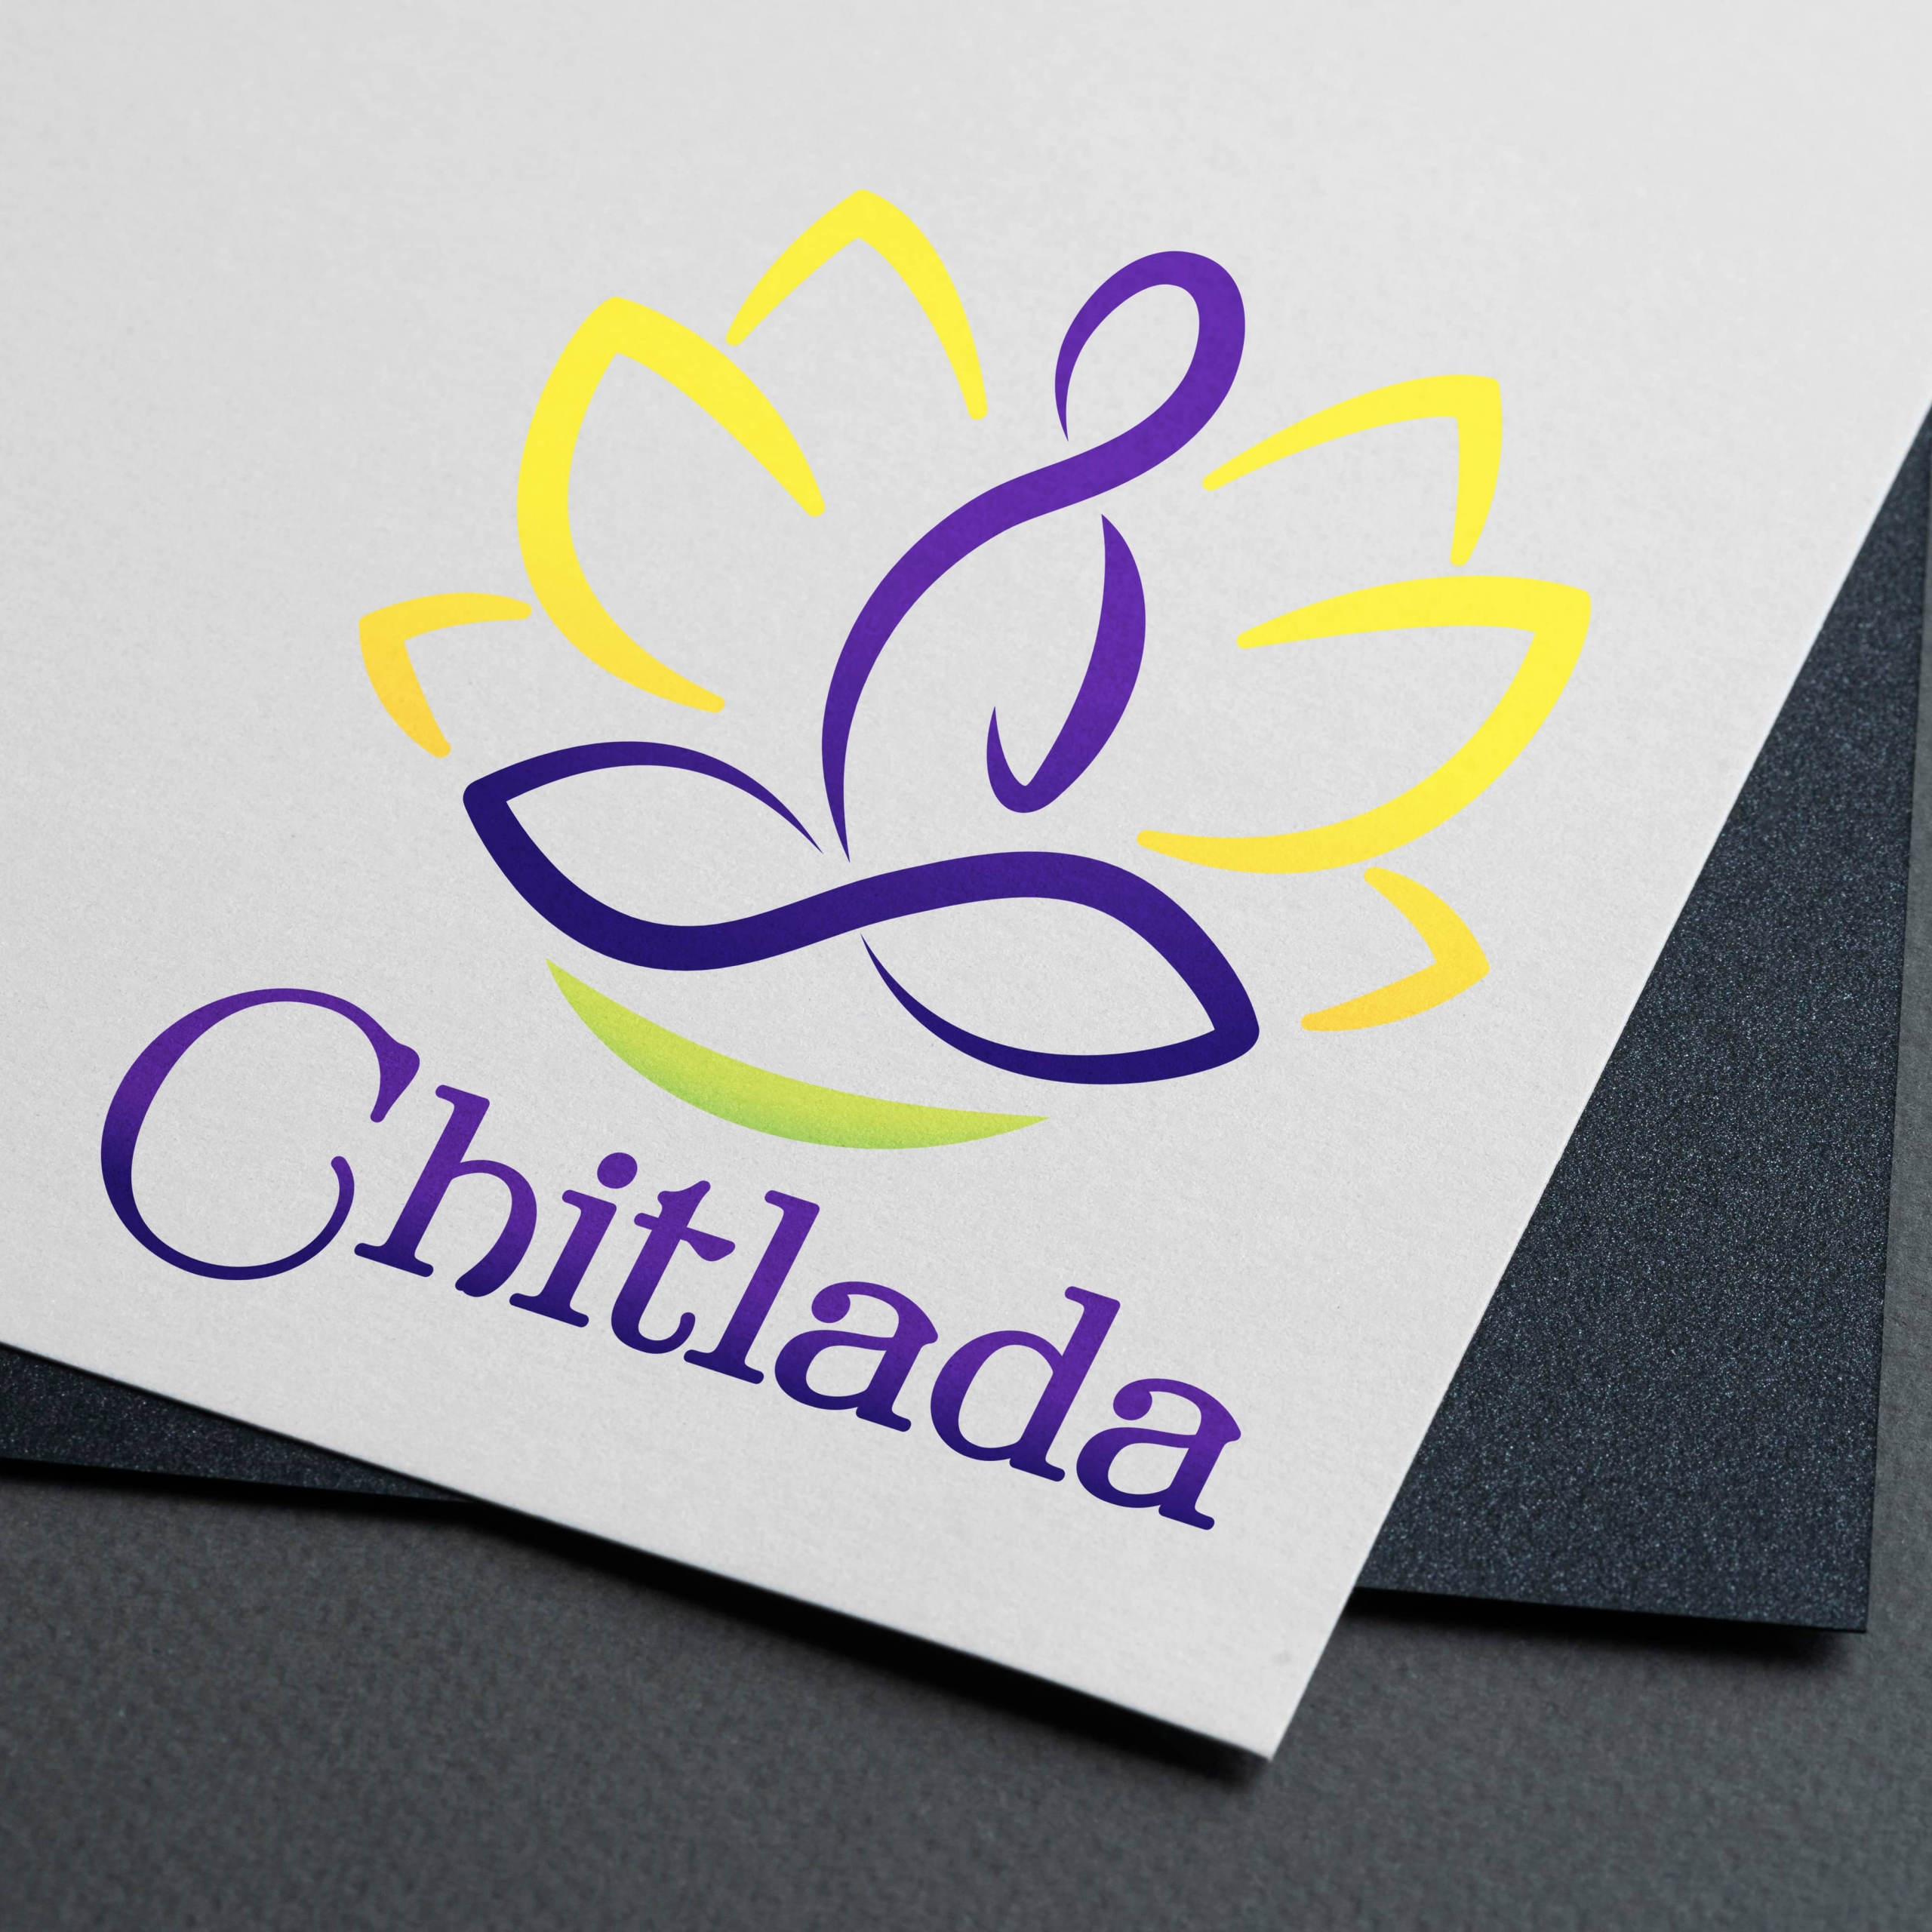 Logo Chitlada